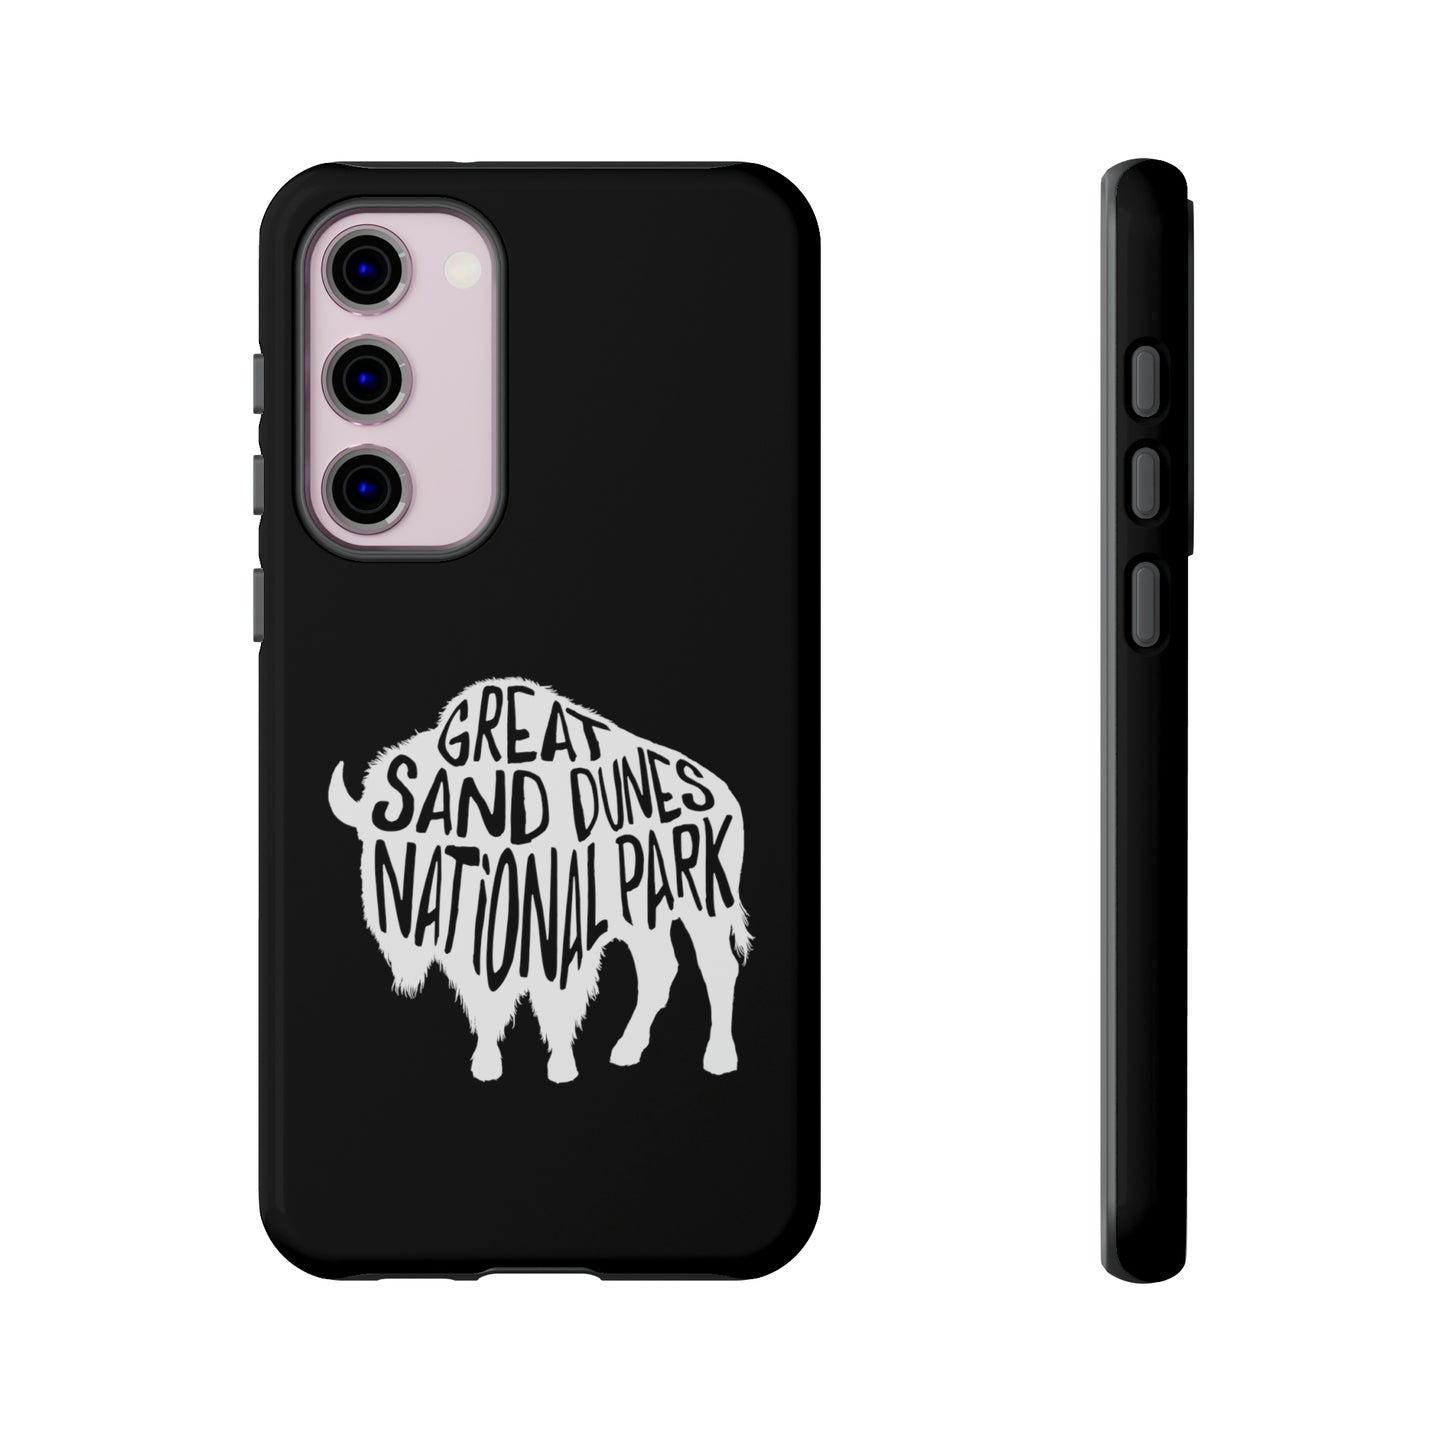 Great Sand Dunes National Park Phone Case - Bison Design